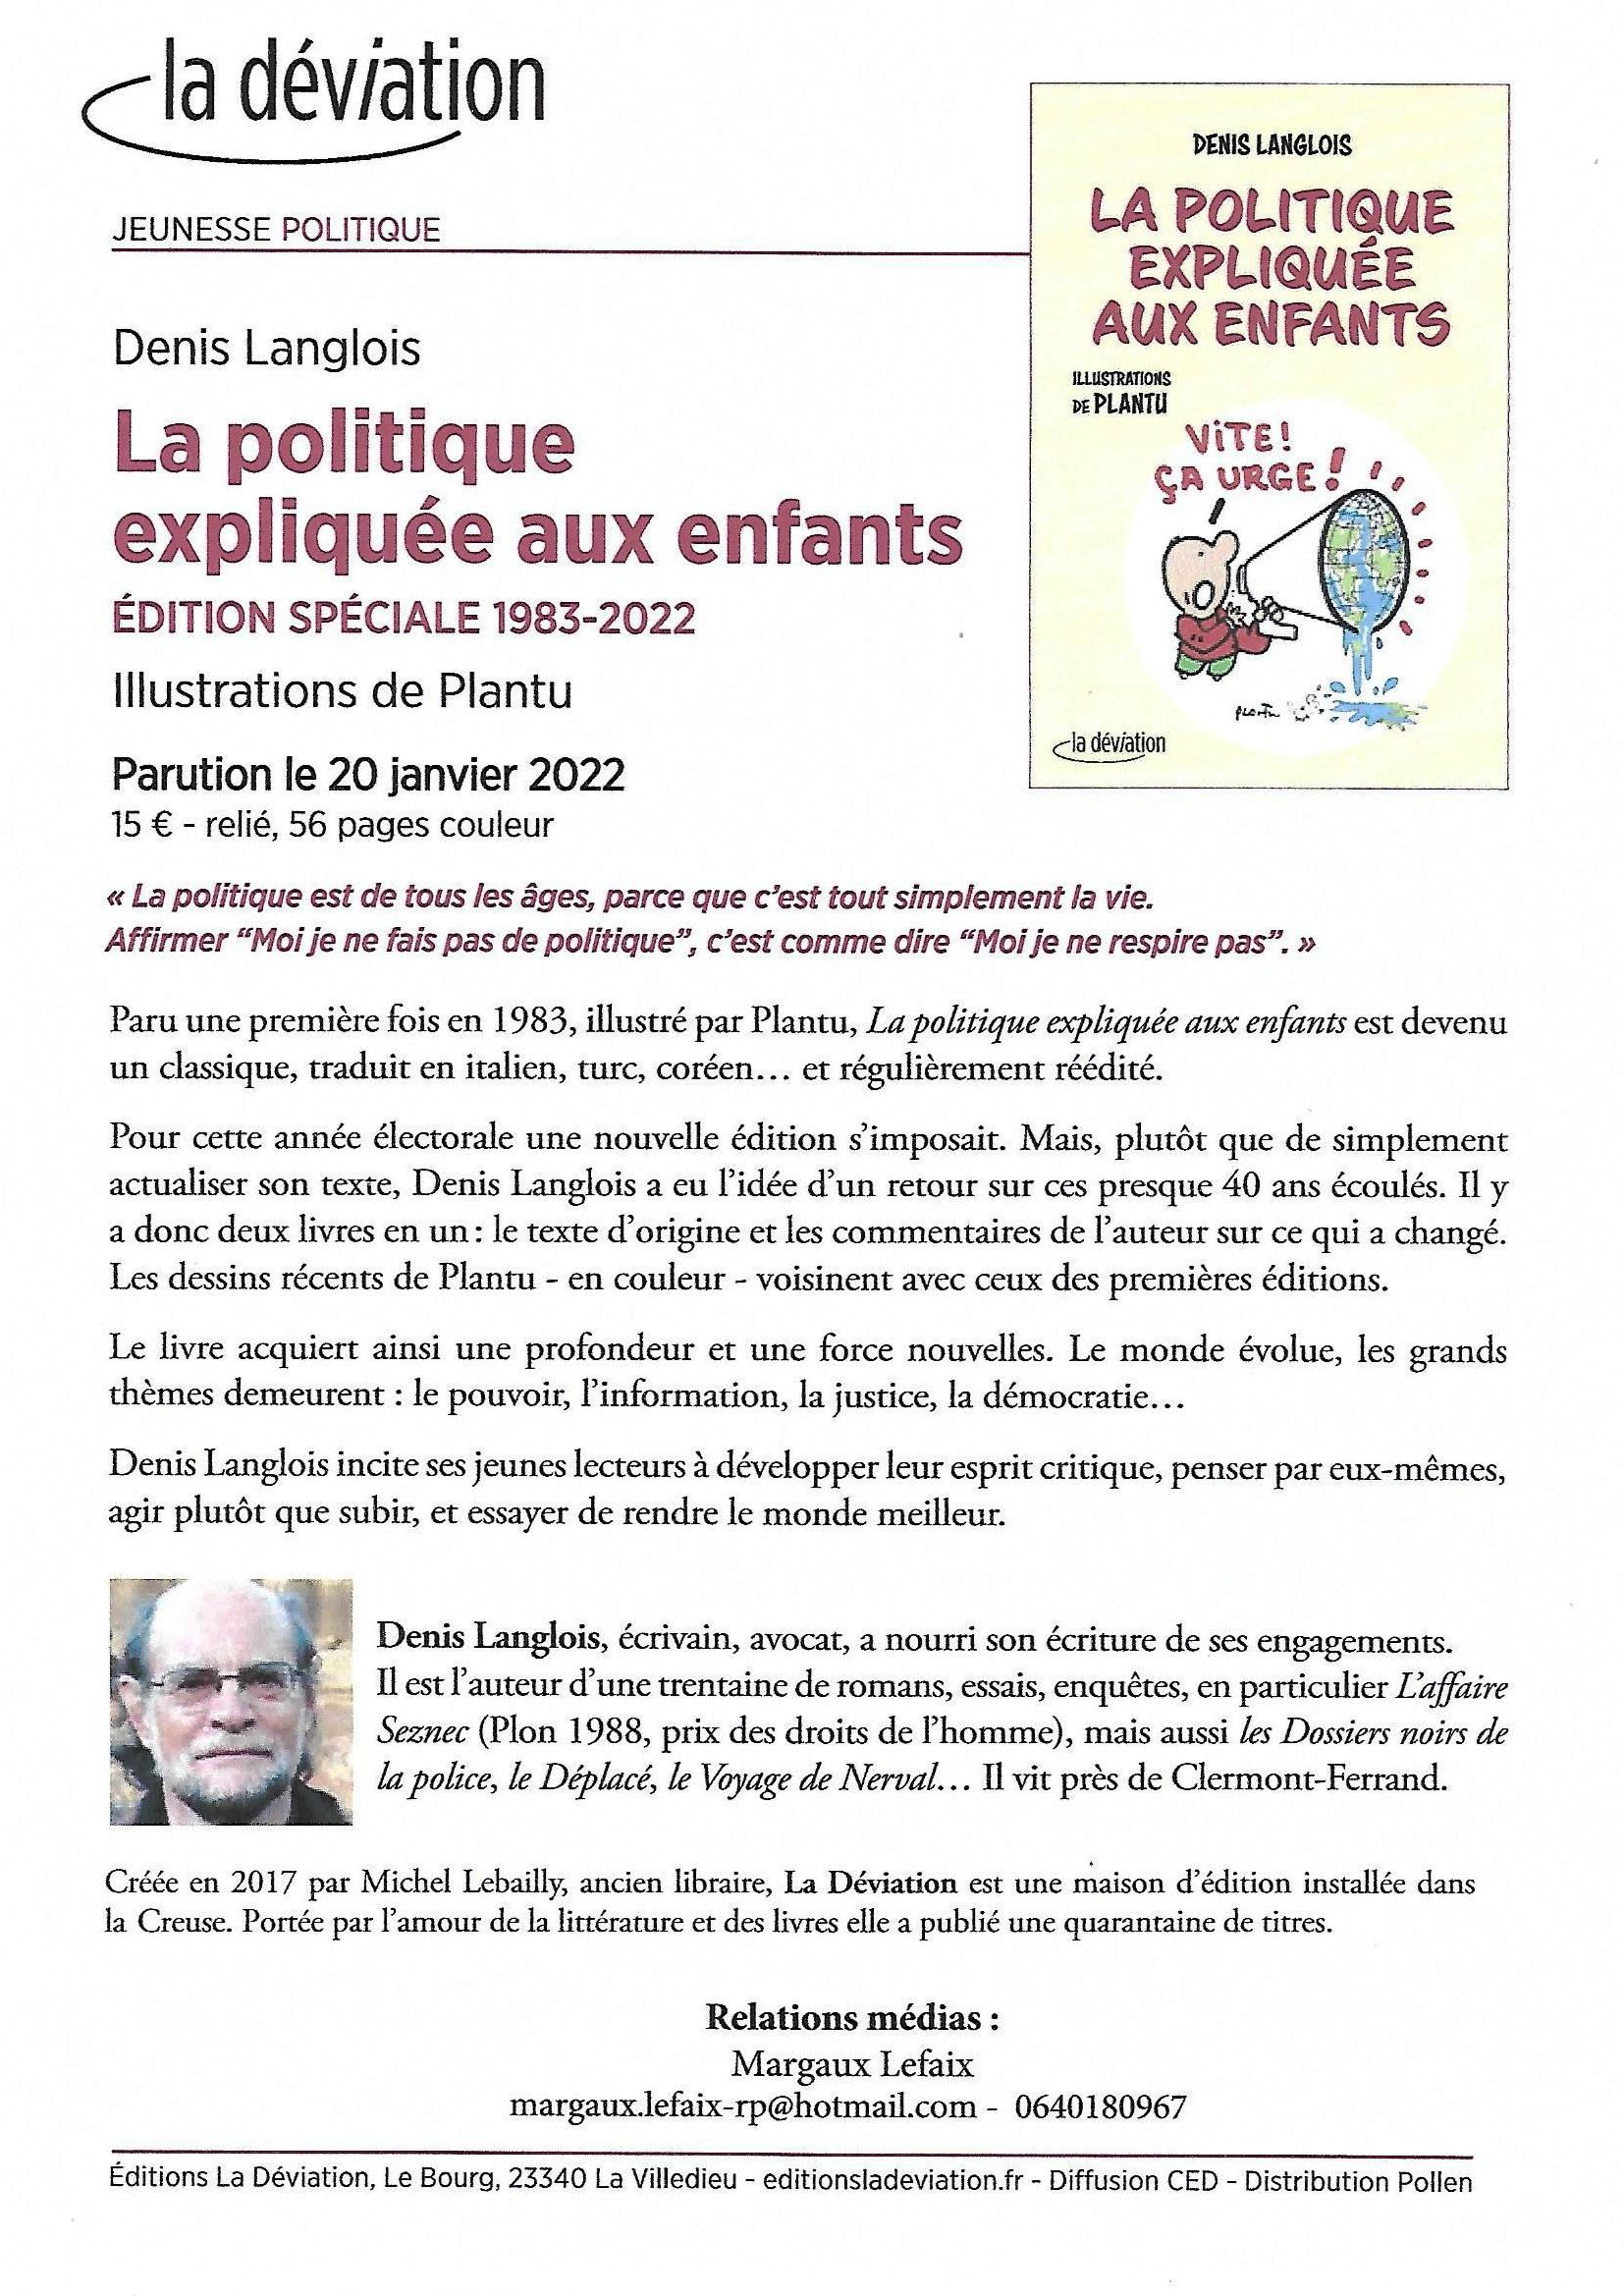 Ses livres - Denis Langlois, écrivain, avocat.